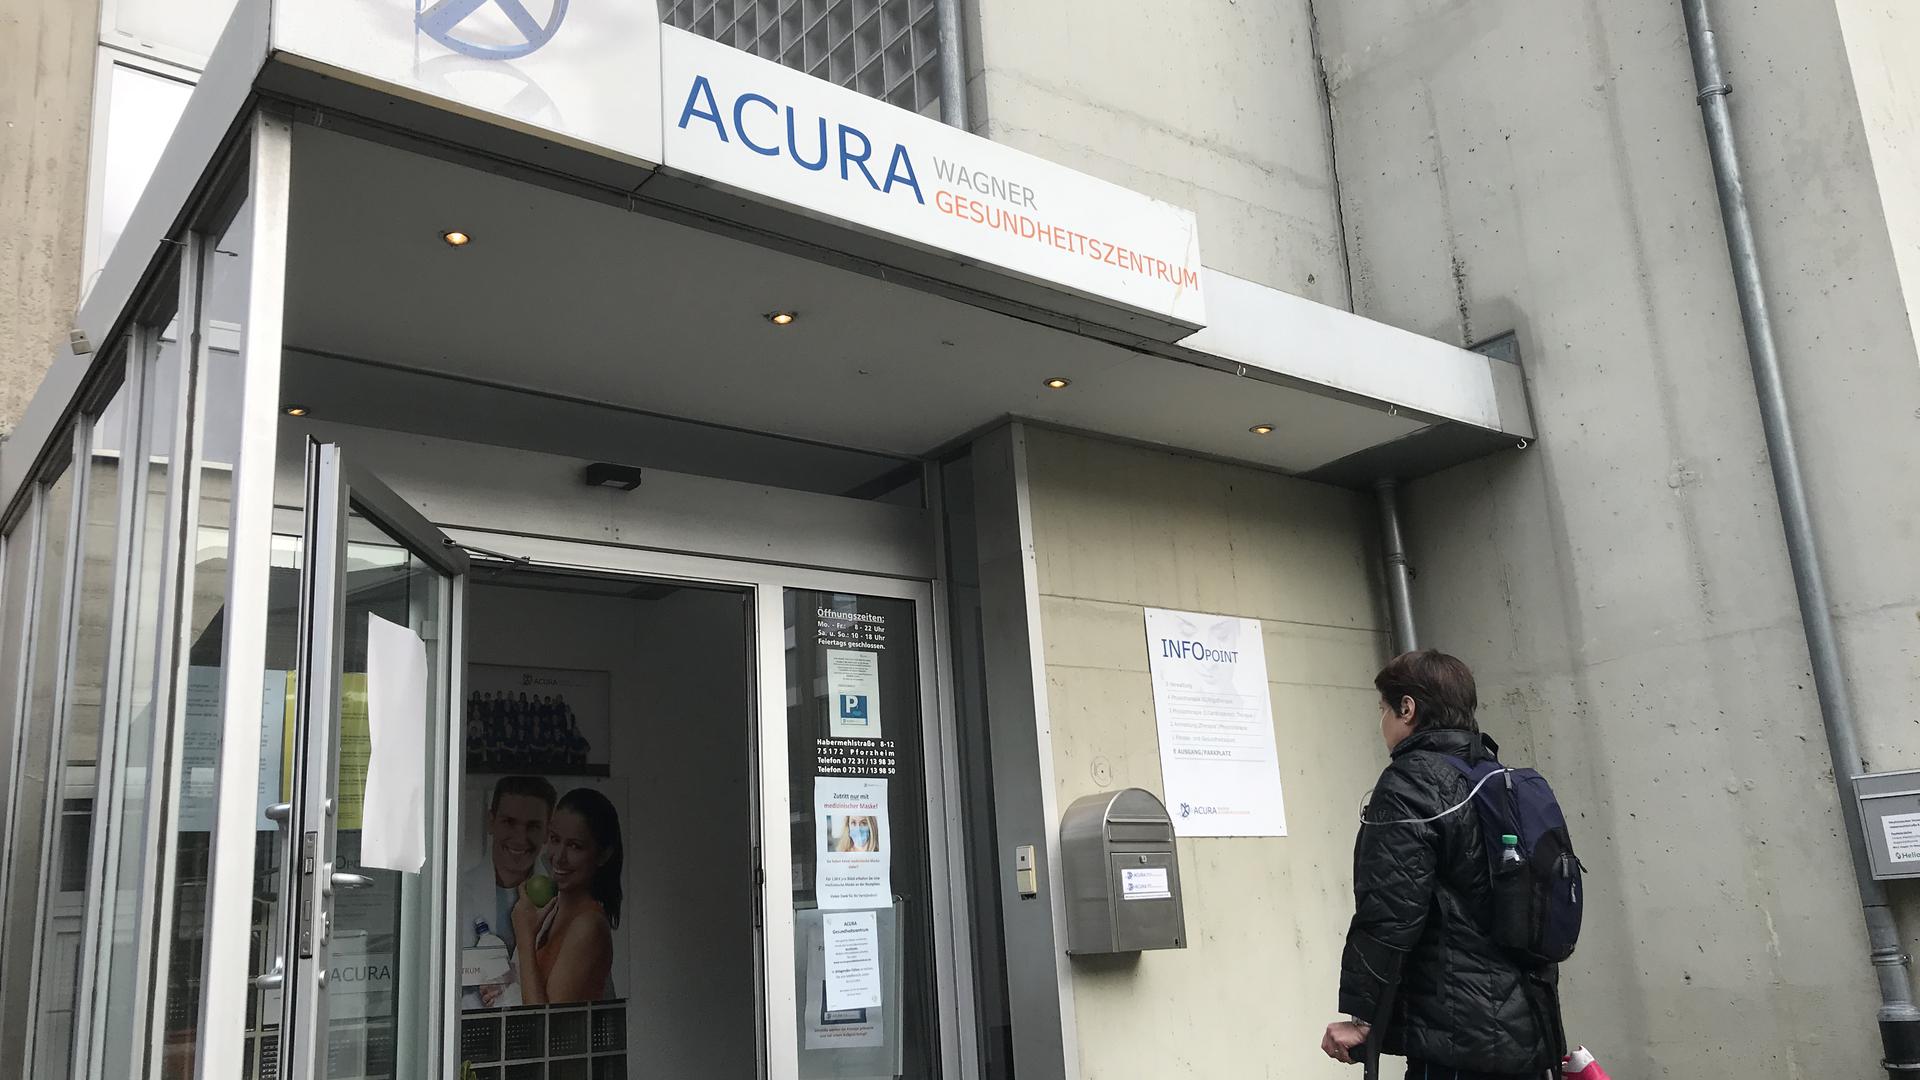 Bald wieder am alten Standort? Nach der Entscheidung des Oberlandesgerichts Karlsruhe will das Acura Wagner Gesundheitszentrum in die Pforzheimer Habermehlstraße zurückkehren. 